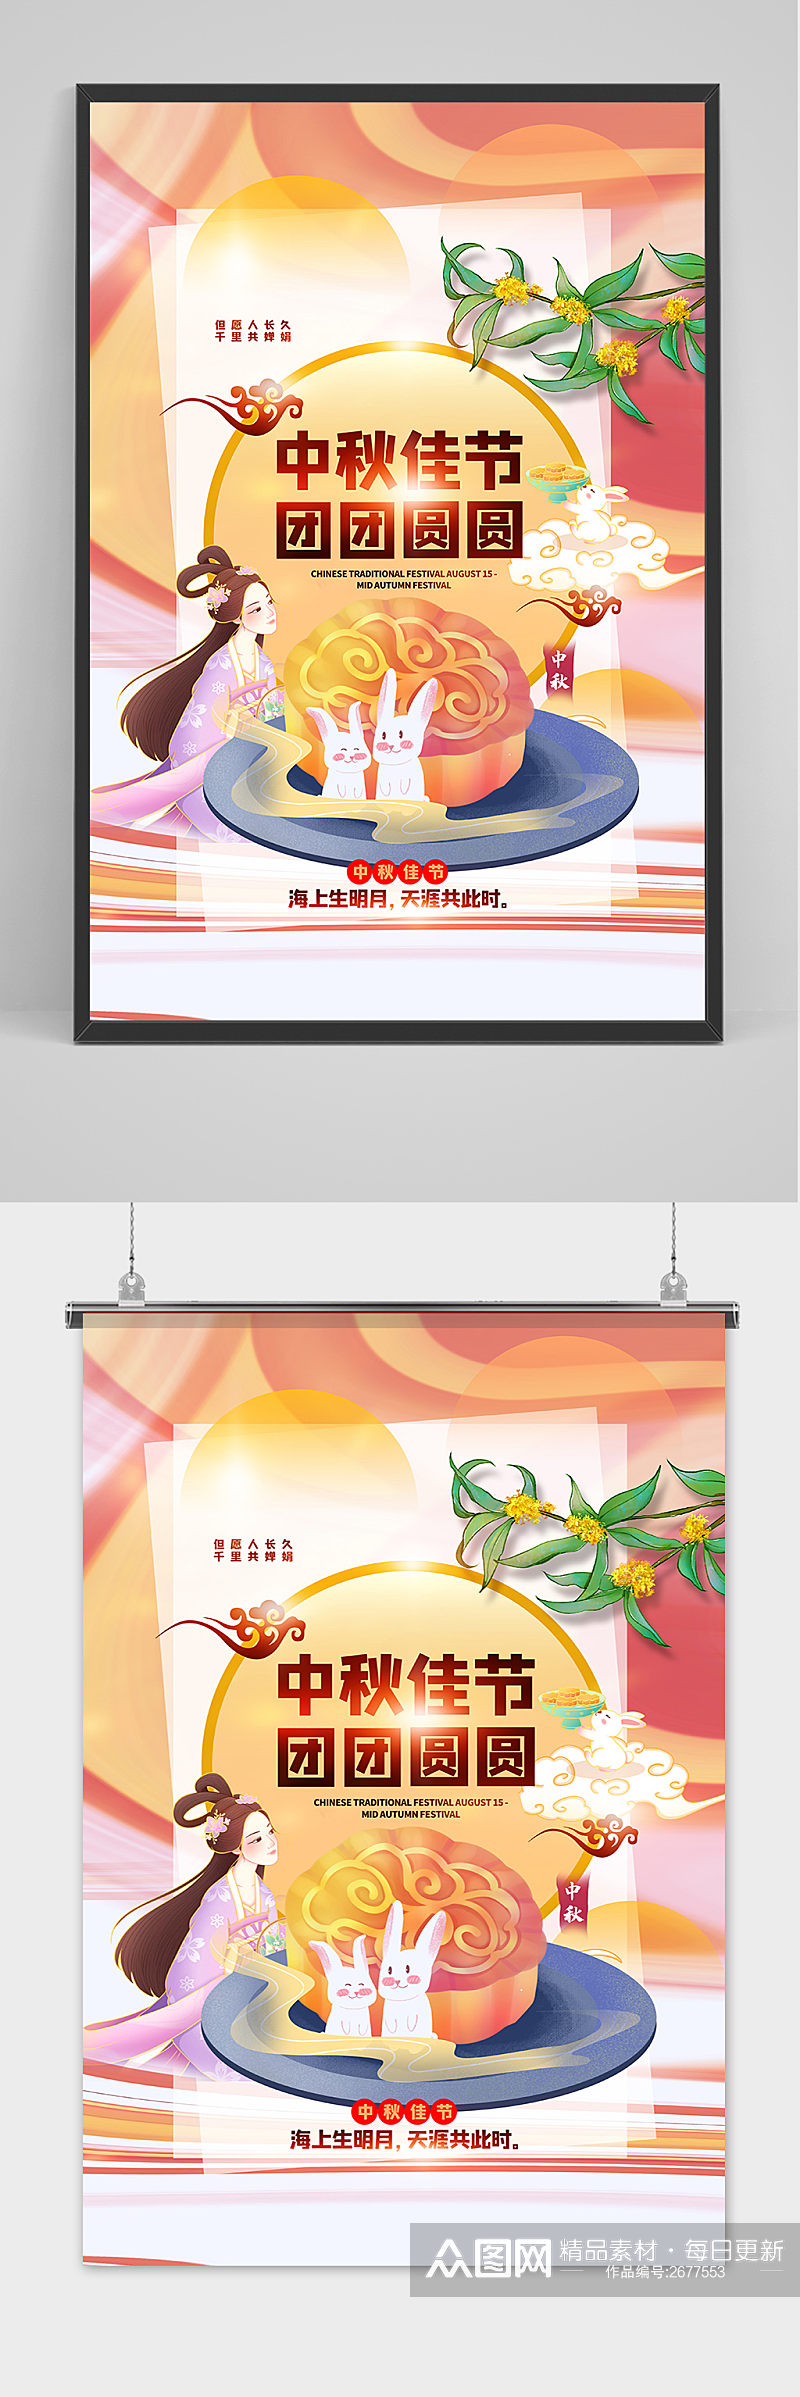 创意大气传统中国风中秋节海报素材